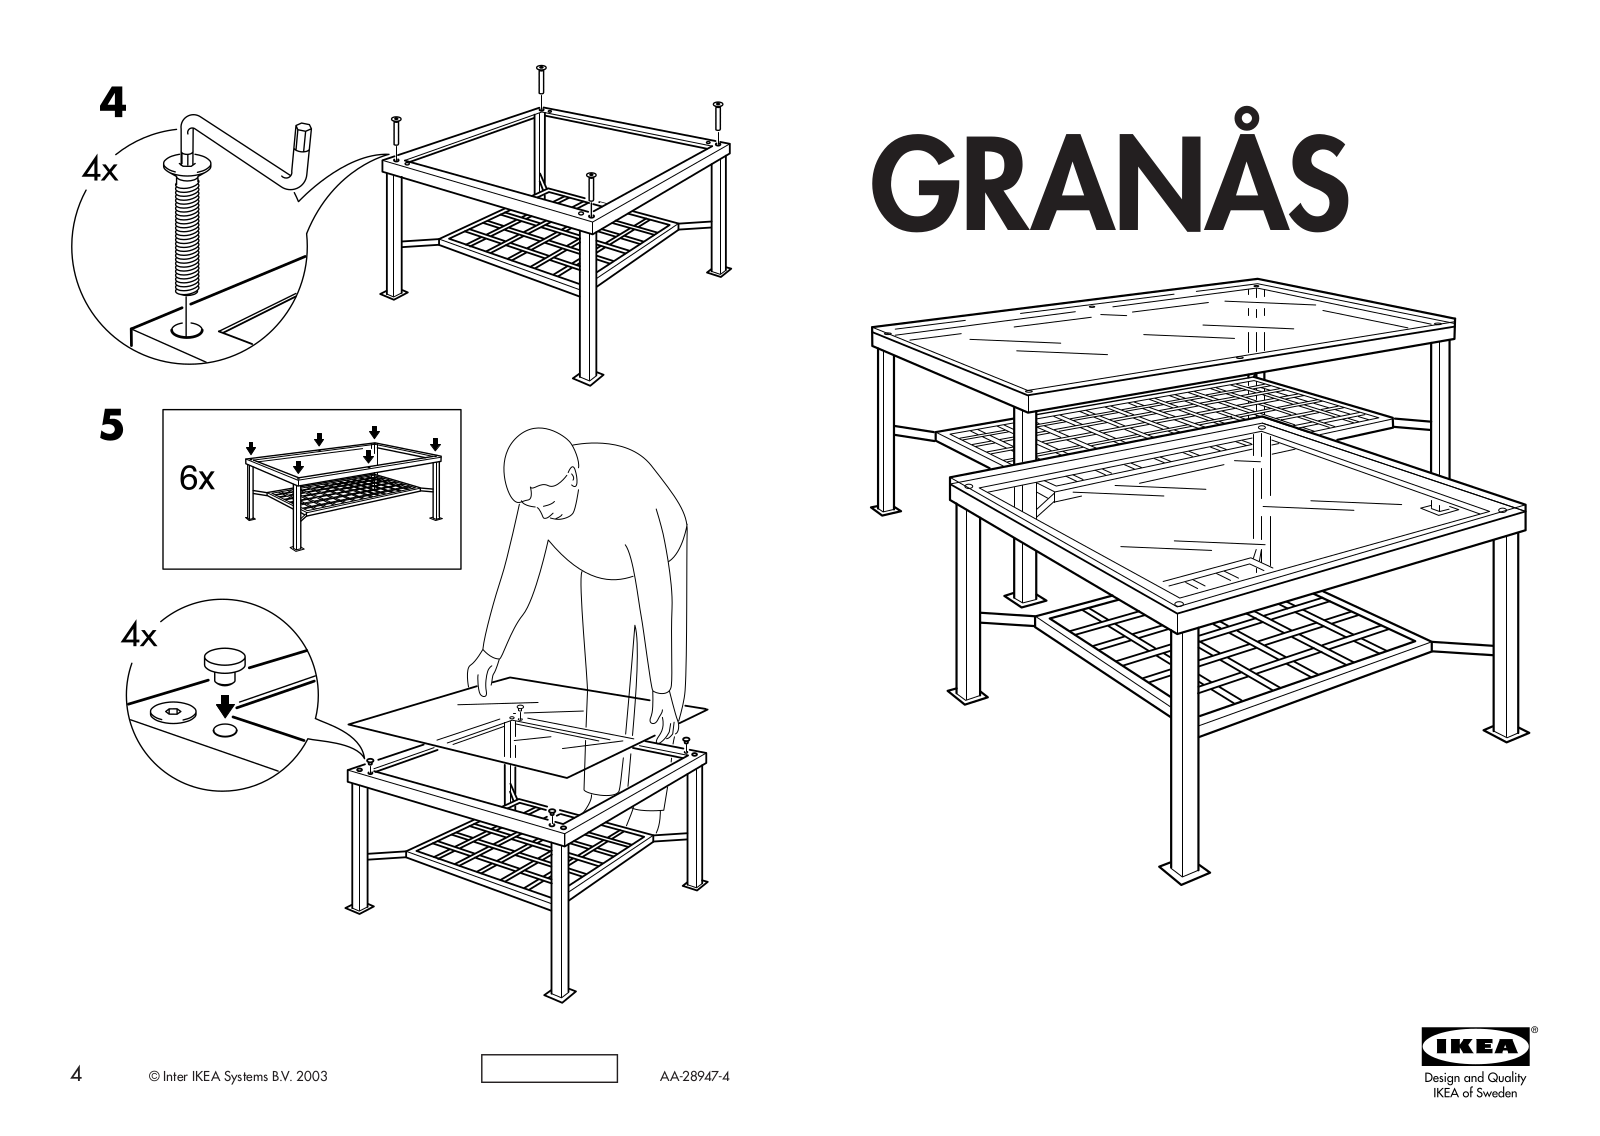 IKEA GRANÅS SIDE TABLE 27X27